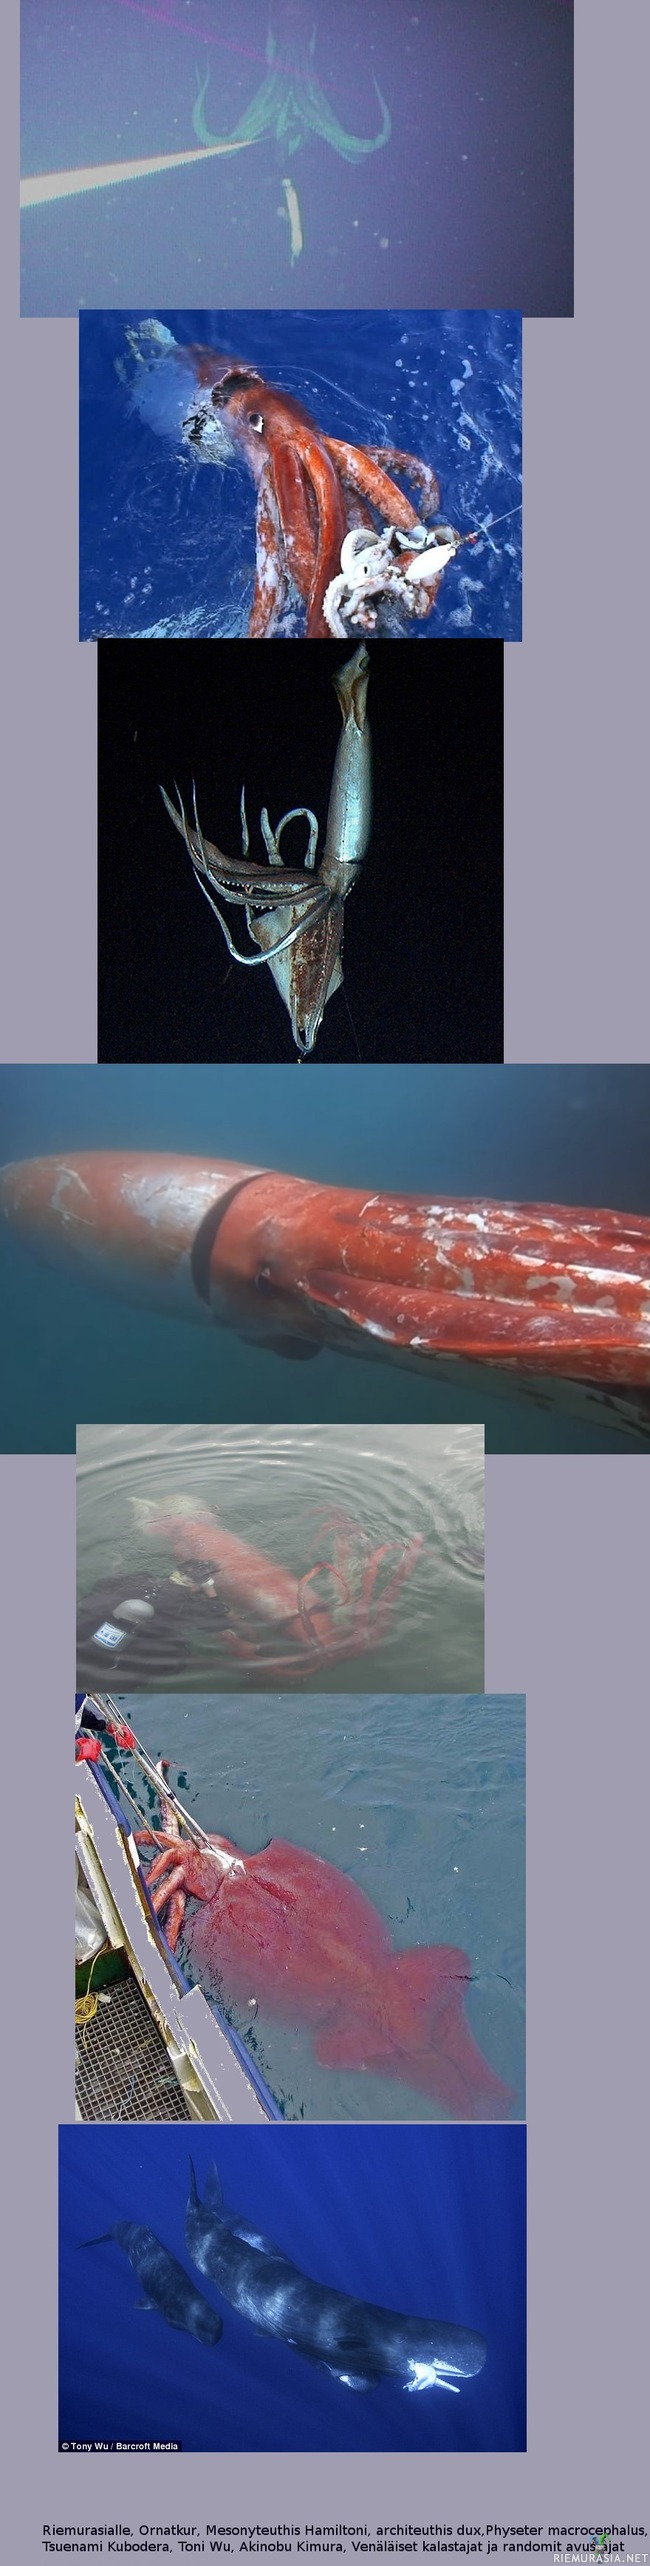 Jättiläiskalmareita - Kuvakollaasi todellisista hirviöistä sekä niiden taustoista. Jättiläiskalmari on tunnettu aina jollain tasolla, mutta ensimmäisen kerran sen kuvasi Tsuenami Kubodera japanin rannikolla vuonna 2004 eräänlaisella vedenalaisella riistakameralla (Kuva 1). Vuonna 2006 hän onnistui onkimaan sellaisen (Kuva 2). Vuonna 2013 sama heppuli oli mukana järjettömän kalliilla tutkimusretkellä, jolla saatiin eeppistä videota siitä luonnollisessa ympäristössään silmästä silmään. (Kuva 3, se syö alla olevaa pienempää syöttikalmaria) Jouluna 2015 luonto teki jekun, lukemattomien ihmisten elämätyöstä huolimatta yksi eläin päätti tulla uiskentelemaan erääseen japanilaiseen satamaan, (Kuvat 4 ja 5) sukeltajana paikallinen Akinobu Kimura. Jälkimmäinen havainto on tuntunut jääneen valitettavan vähälle huomiolle vaikka kuvanlaatu ja yksityiskohdat ovat kerrassaan ennennäkemättömiä. Jättiläiskalmari, Architeus Dux, elää kaikissa merissä (myös norjan rannikolla, mistä legenda krakenista on lähtöisin) sillä pitäisi olla kaksi pitkää pyyntilonkeroa, mutta ne puuttuu kaikilta kuvatuilta yksilöiltä, joten henkilökohtaisesti uskon niiden oleva tieteelle tuntemattomia jättiläiskalmareita. Kuvassa 6 näkyy vain etelämantereella elävä kolossikalmari Mesonyteuthis Hamiltoni, joka tunnetaan vain muutamasta kohtaamisesta venäläisten kalastajien kanssa. Se on pienempi mutta paljon painavampi kuin jättiläiskalmari. Viimeisenä kaskelotti jolla on suupielessään juuri saalistettu jättiläiskalmari. Kaskelotille on päivittäinen askare metsästää eläimiä jotka ovat meille myyttisiä, jopa siinä määrin, että nisäkkäänä se saattaa kuolla janoon, jos se ei ole saanut makeaa vettä kalmareista. Lisäksi kaskelotilla on tärkeä rooli lannoittaa meren pintakerroksen planktonikasvua jättiläiskalmareista peräisin olevilla jätöksillä. 